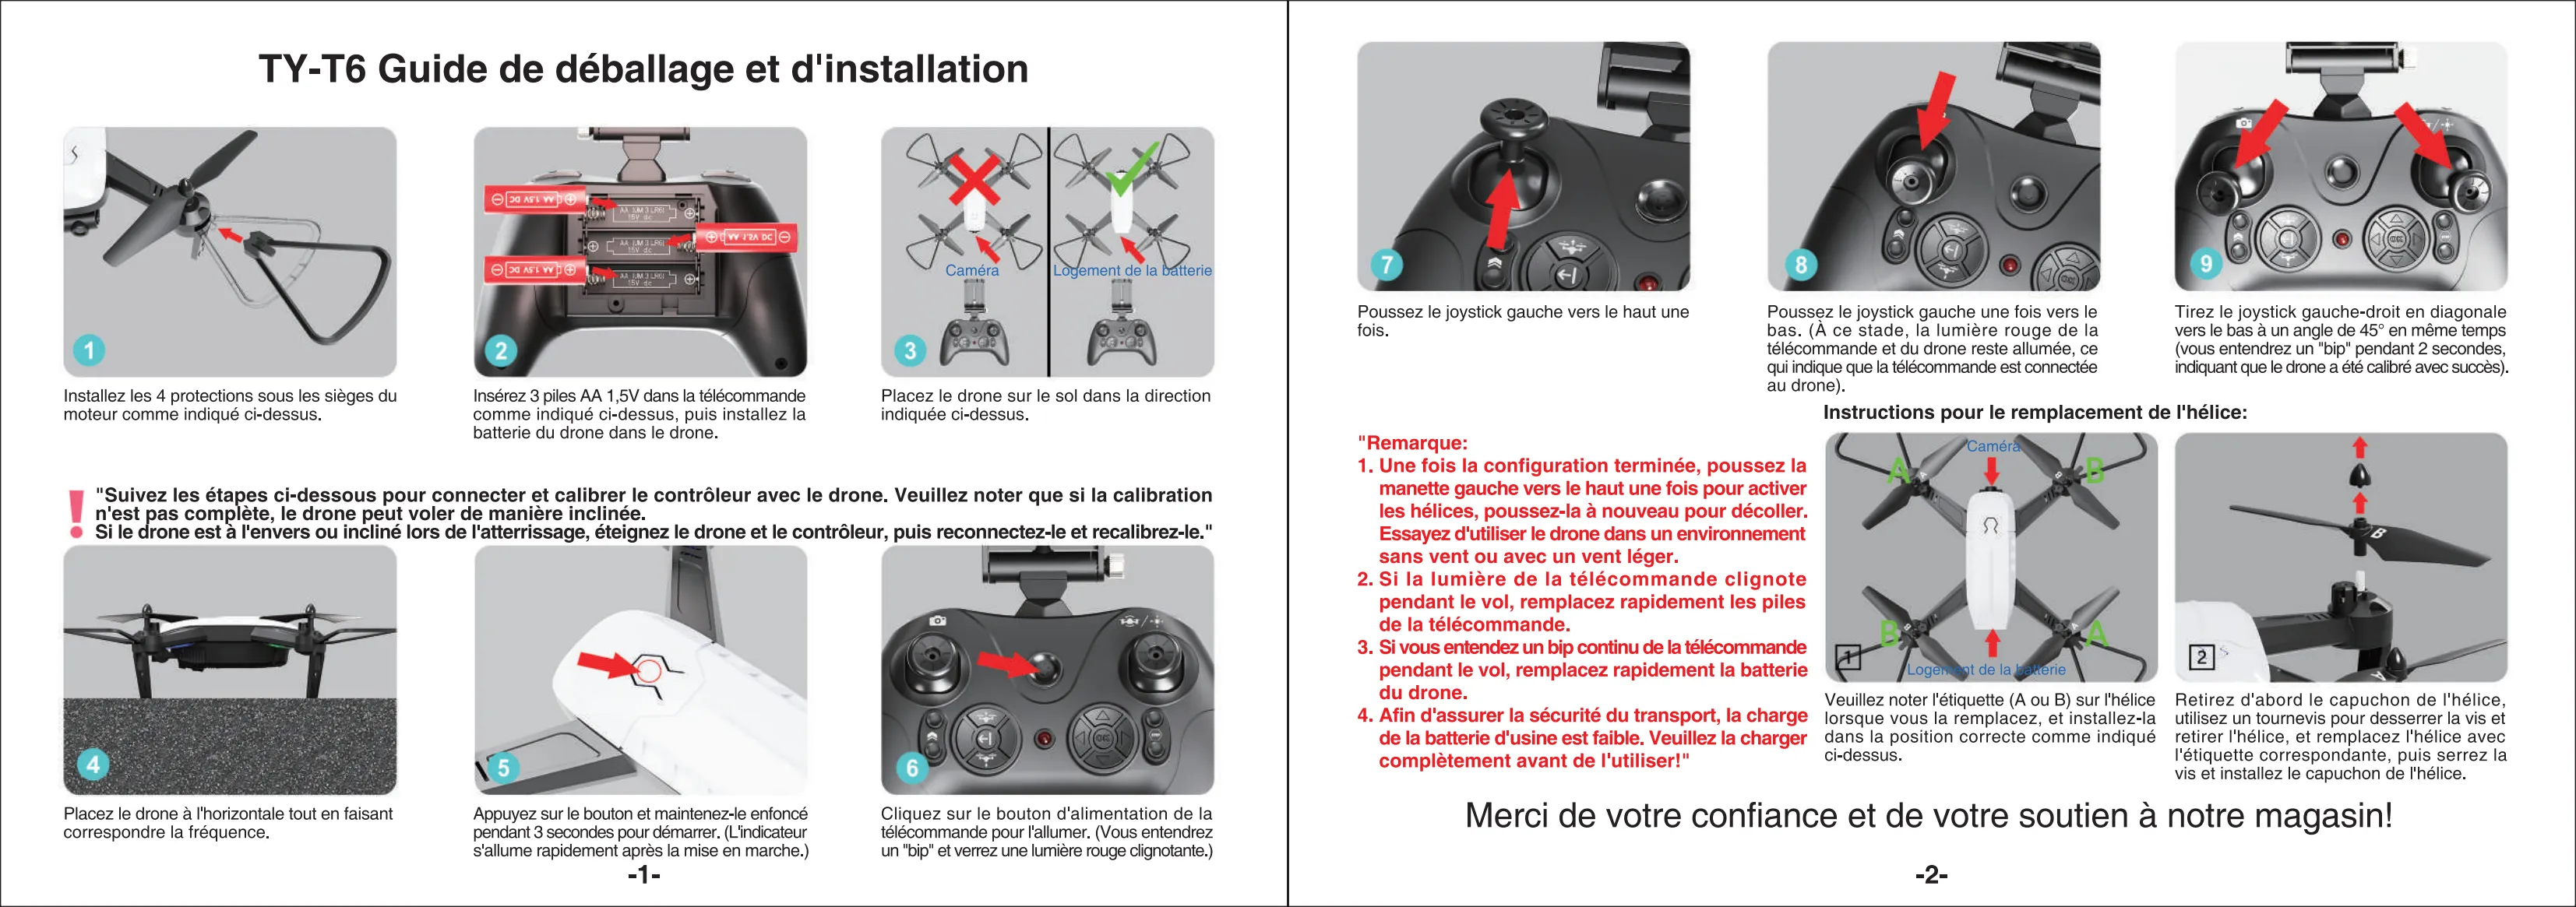 دستورالعمل های عملیاتی T6 Drone-Unboxing